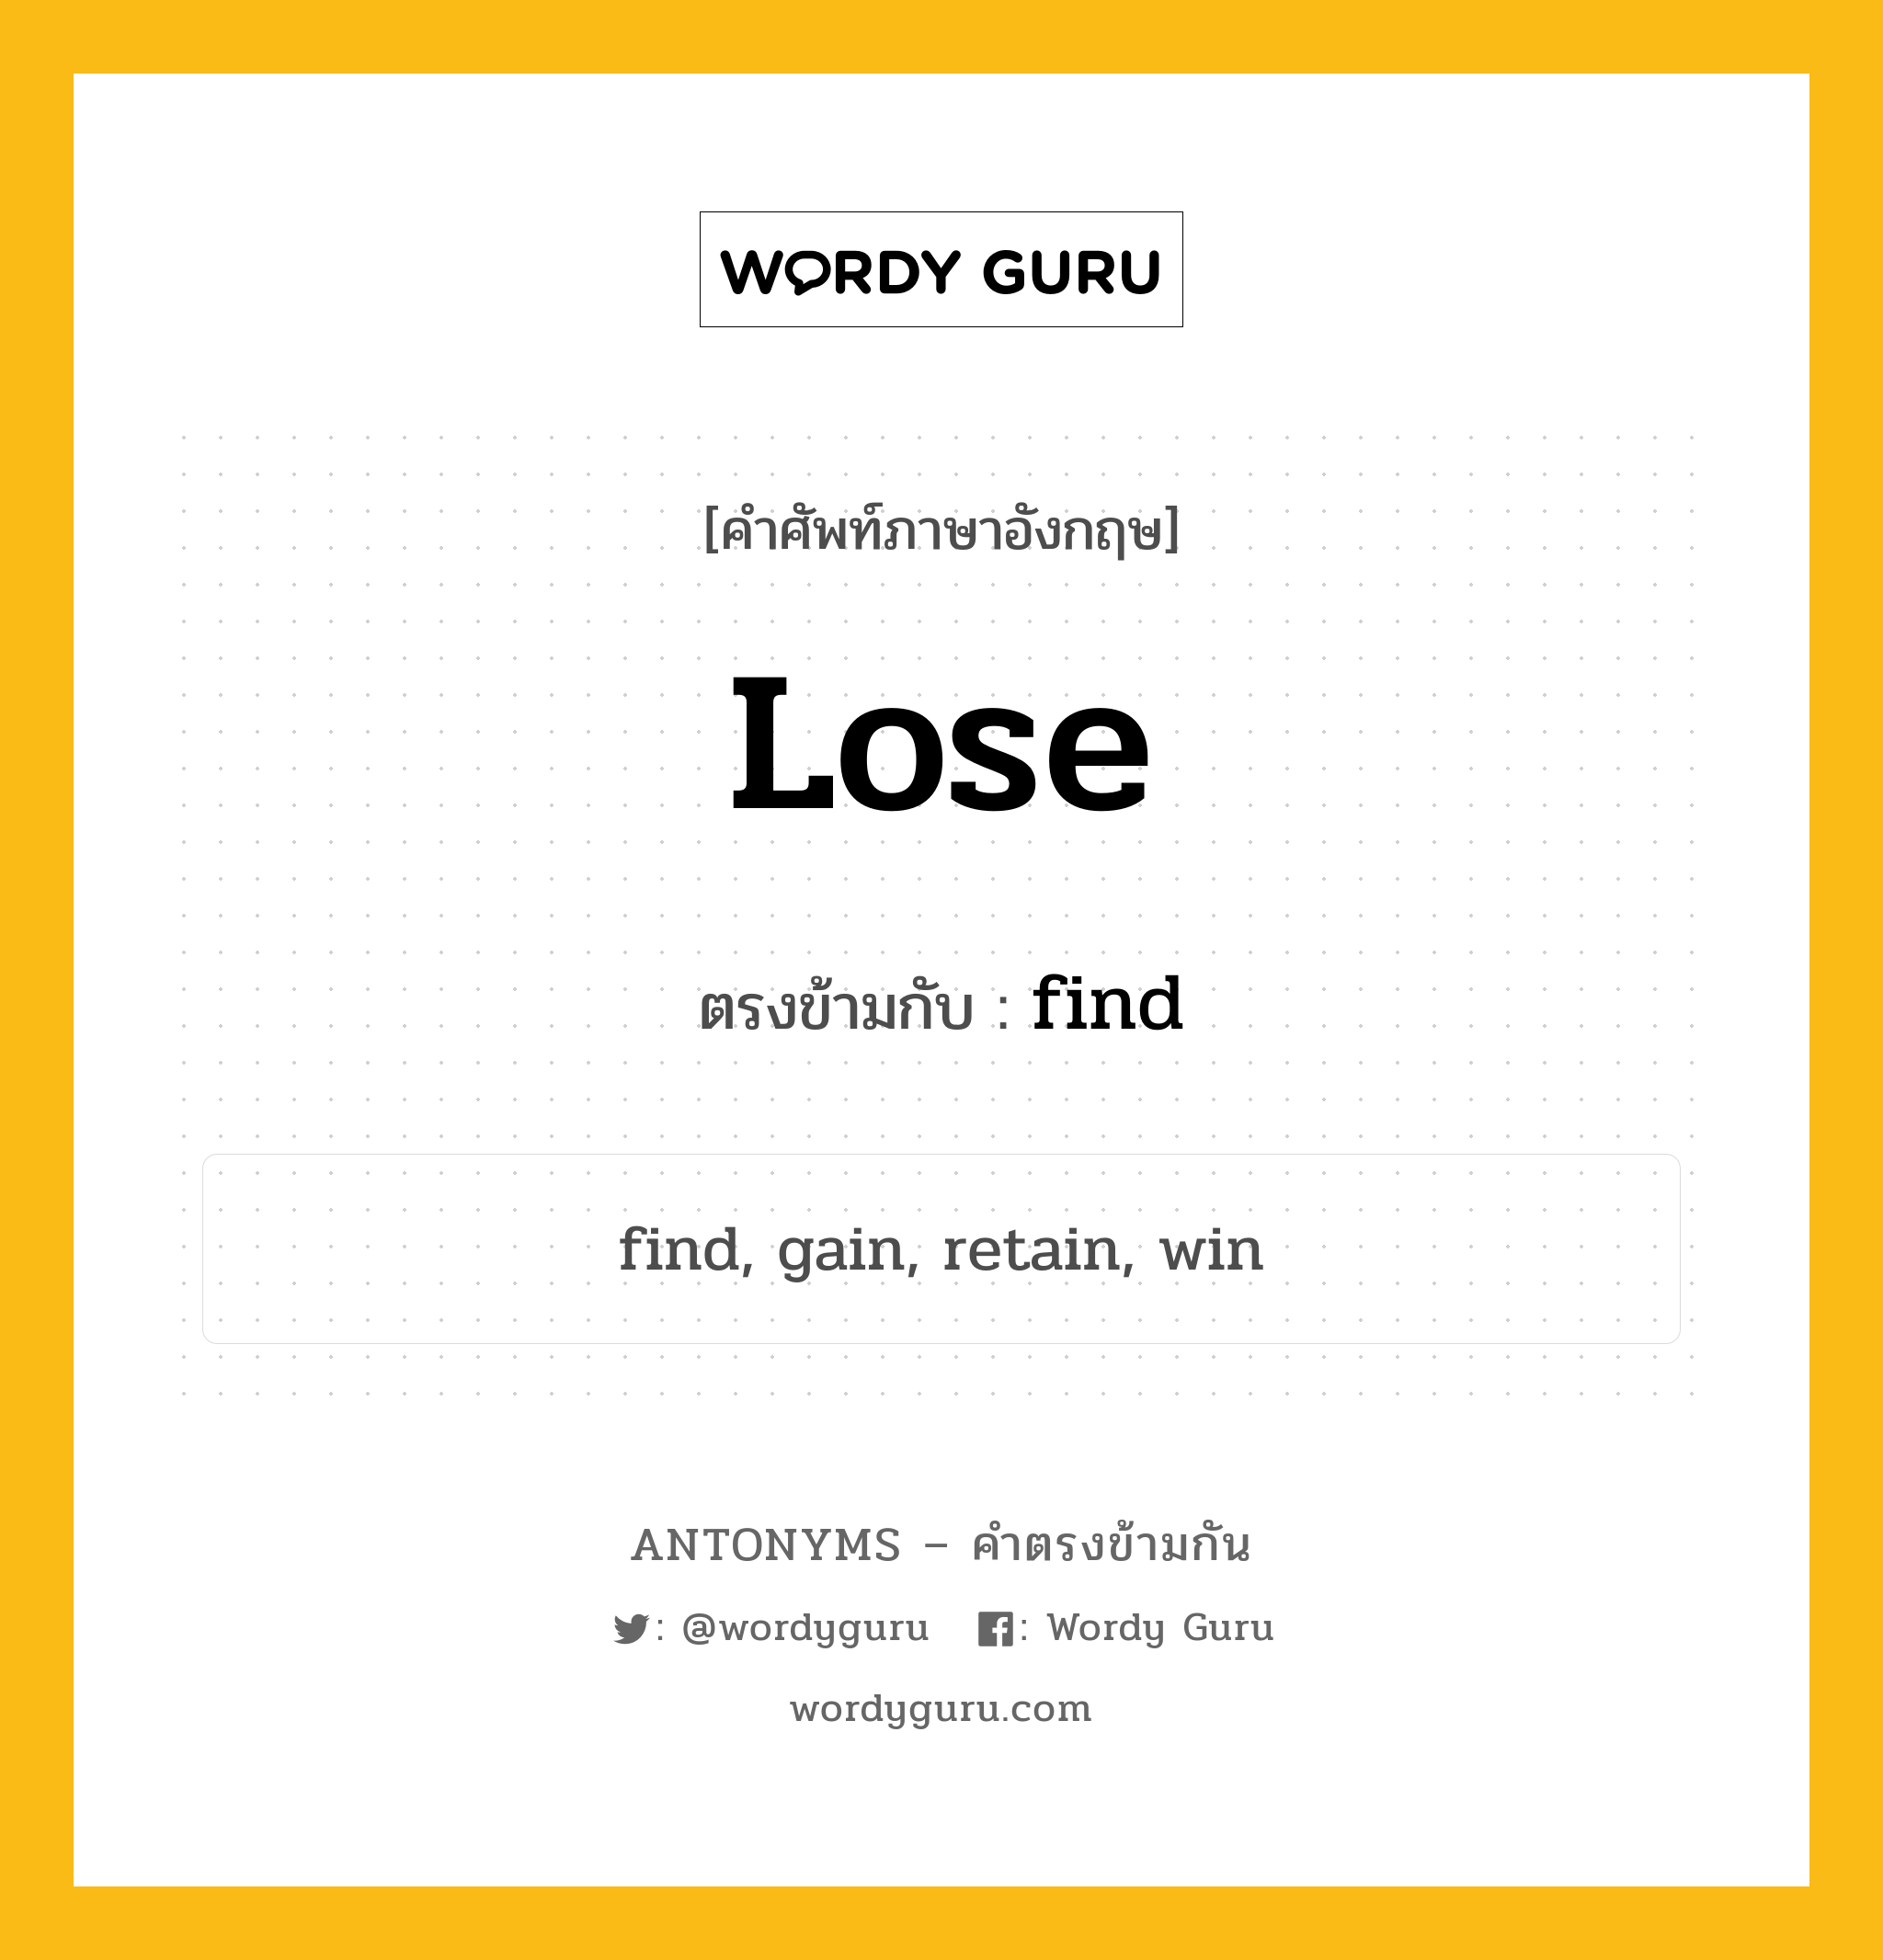 lose เป็นคำตรงข้ามกับคำไหนบ้าง?, คำศัพท์ภาษาอังกฤษ lose ตรงข้ามกับ find หมวด find